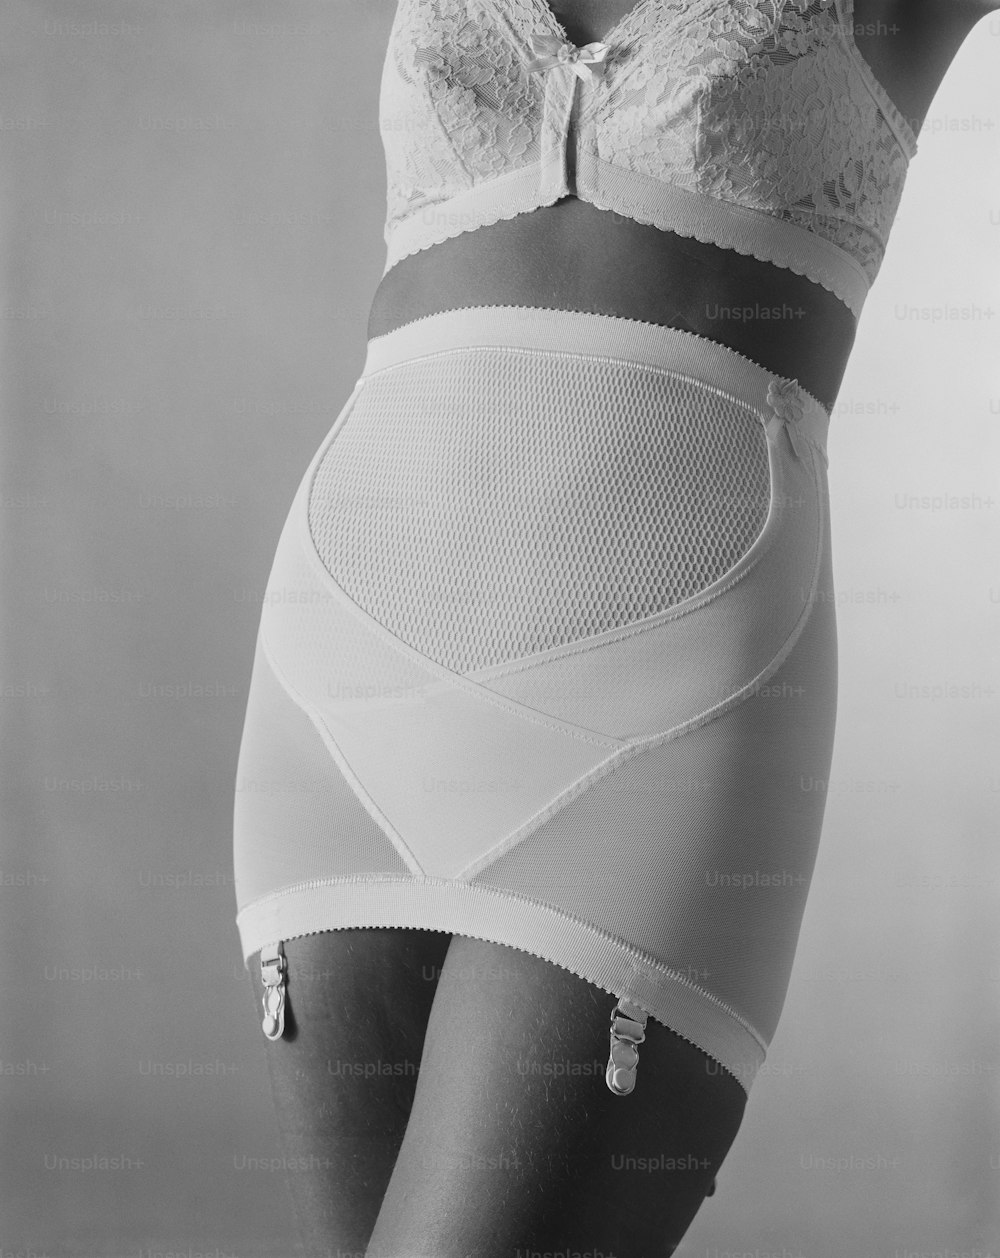 Une femme portant un soutien-gorge et une culotte sur une photo en noir et blanc